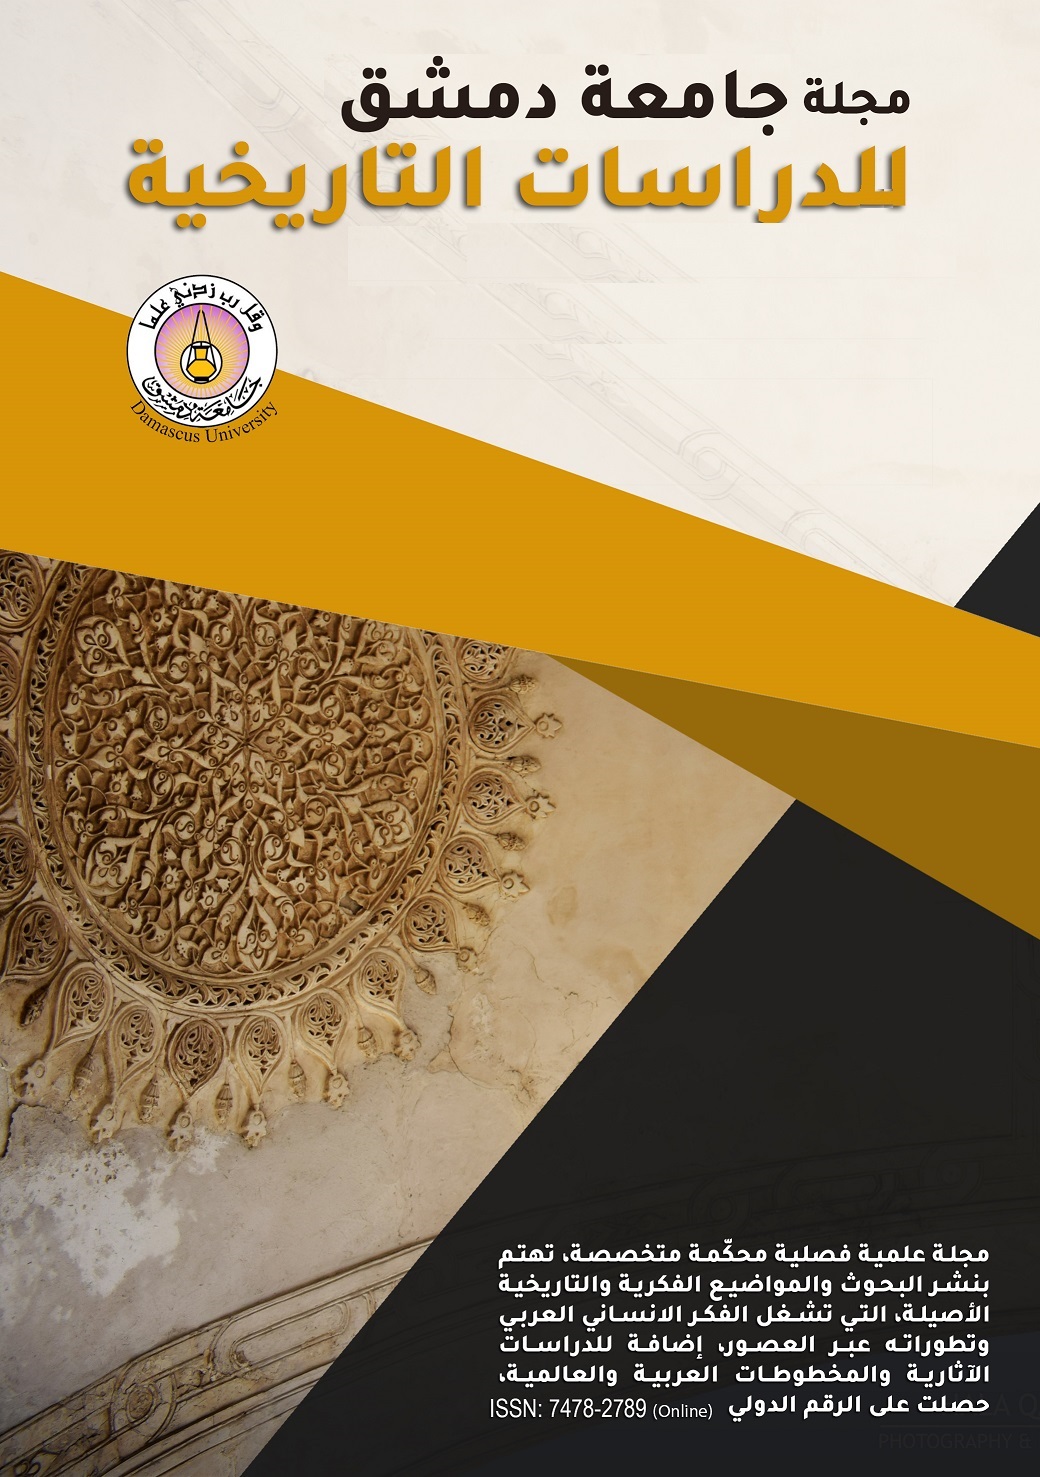 					معاينة مجلد 141 عدد 1 (2021): مجلة جامعة دمشق للدراسات التاريخية
				